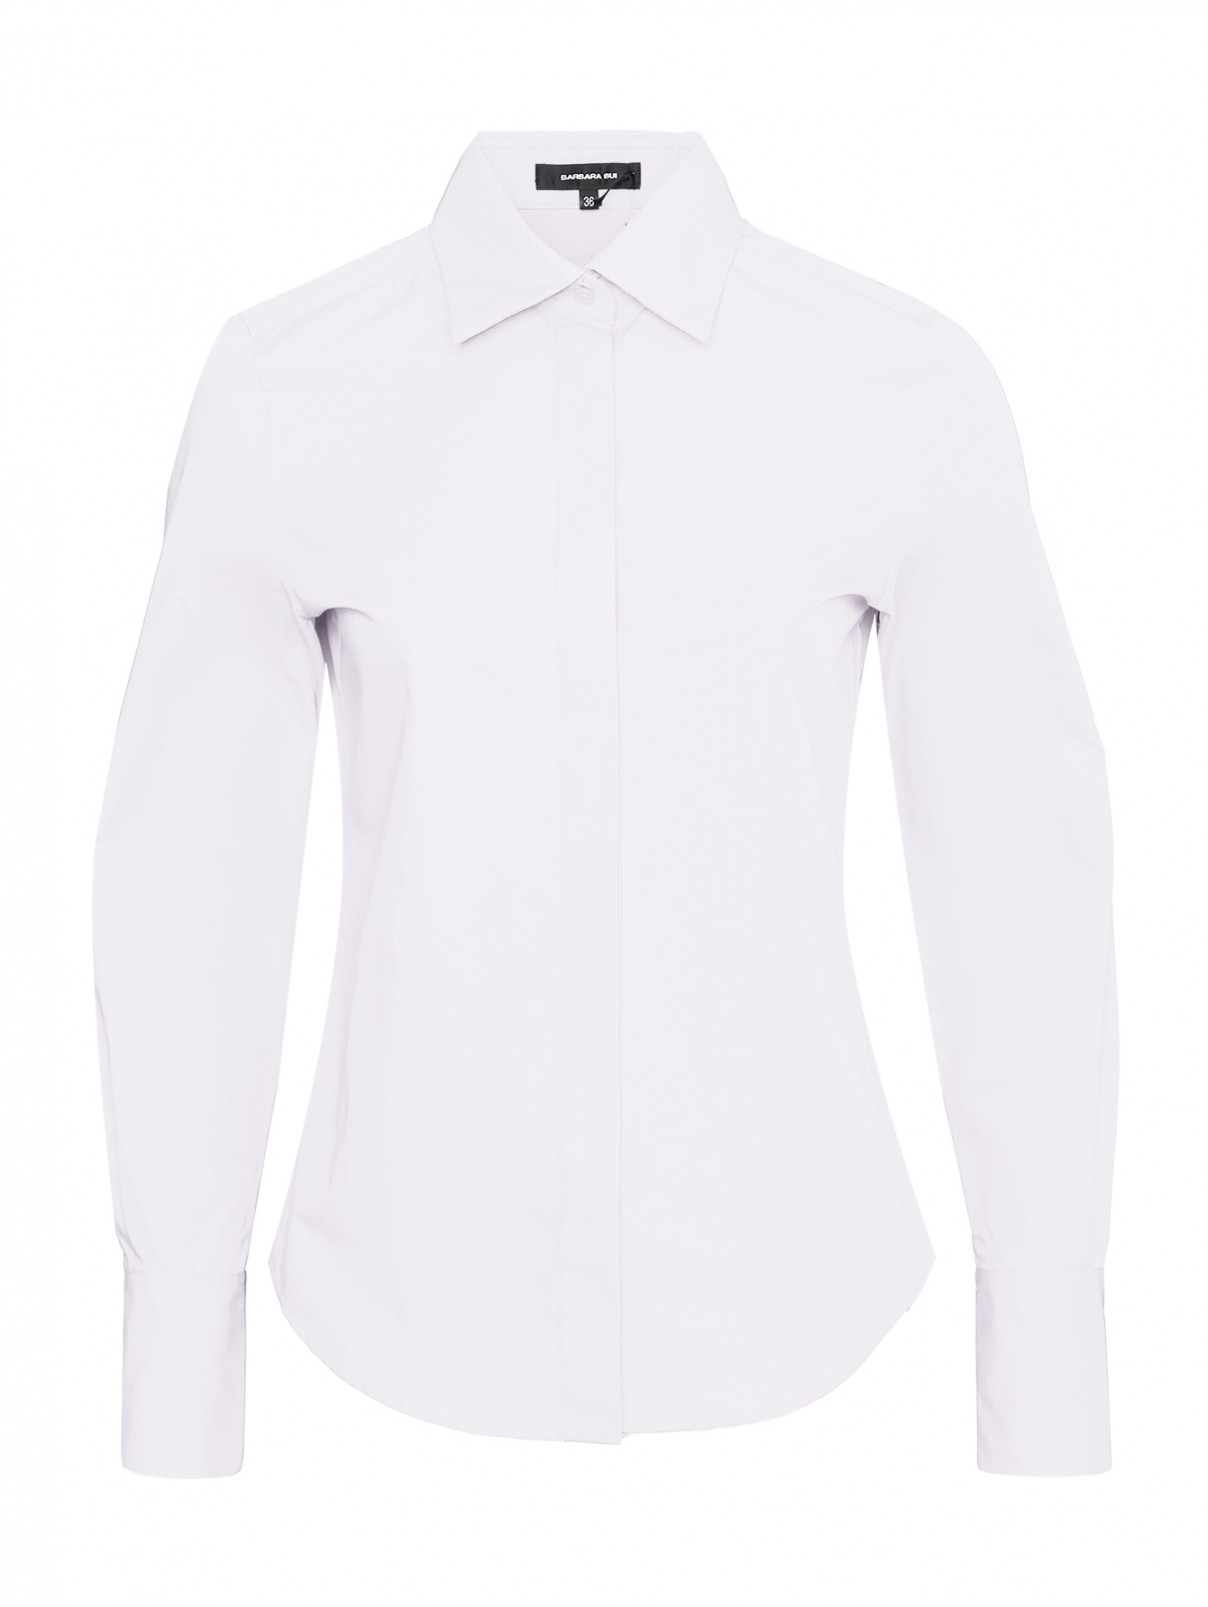 Рубашка из хлопка на пуговицах Barbara Bui  –  Общий вид  – Цвет:  Белый